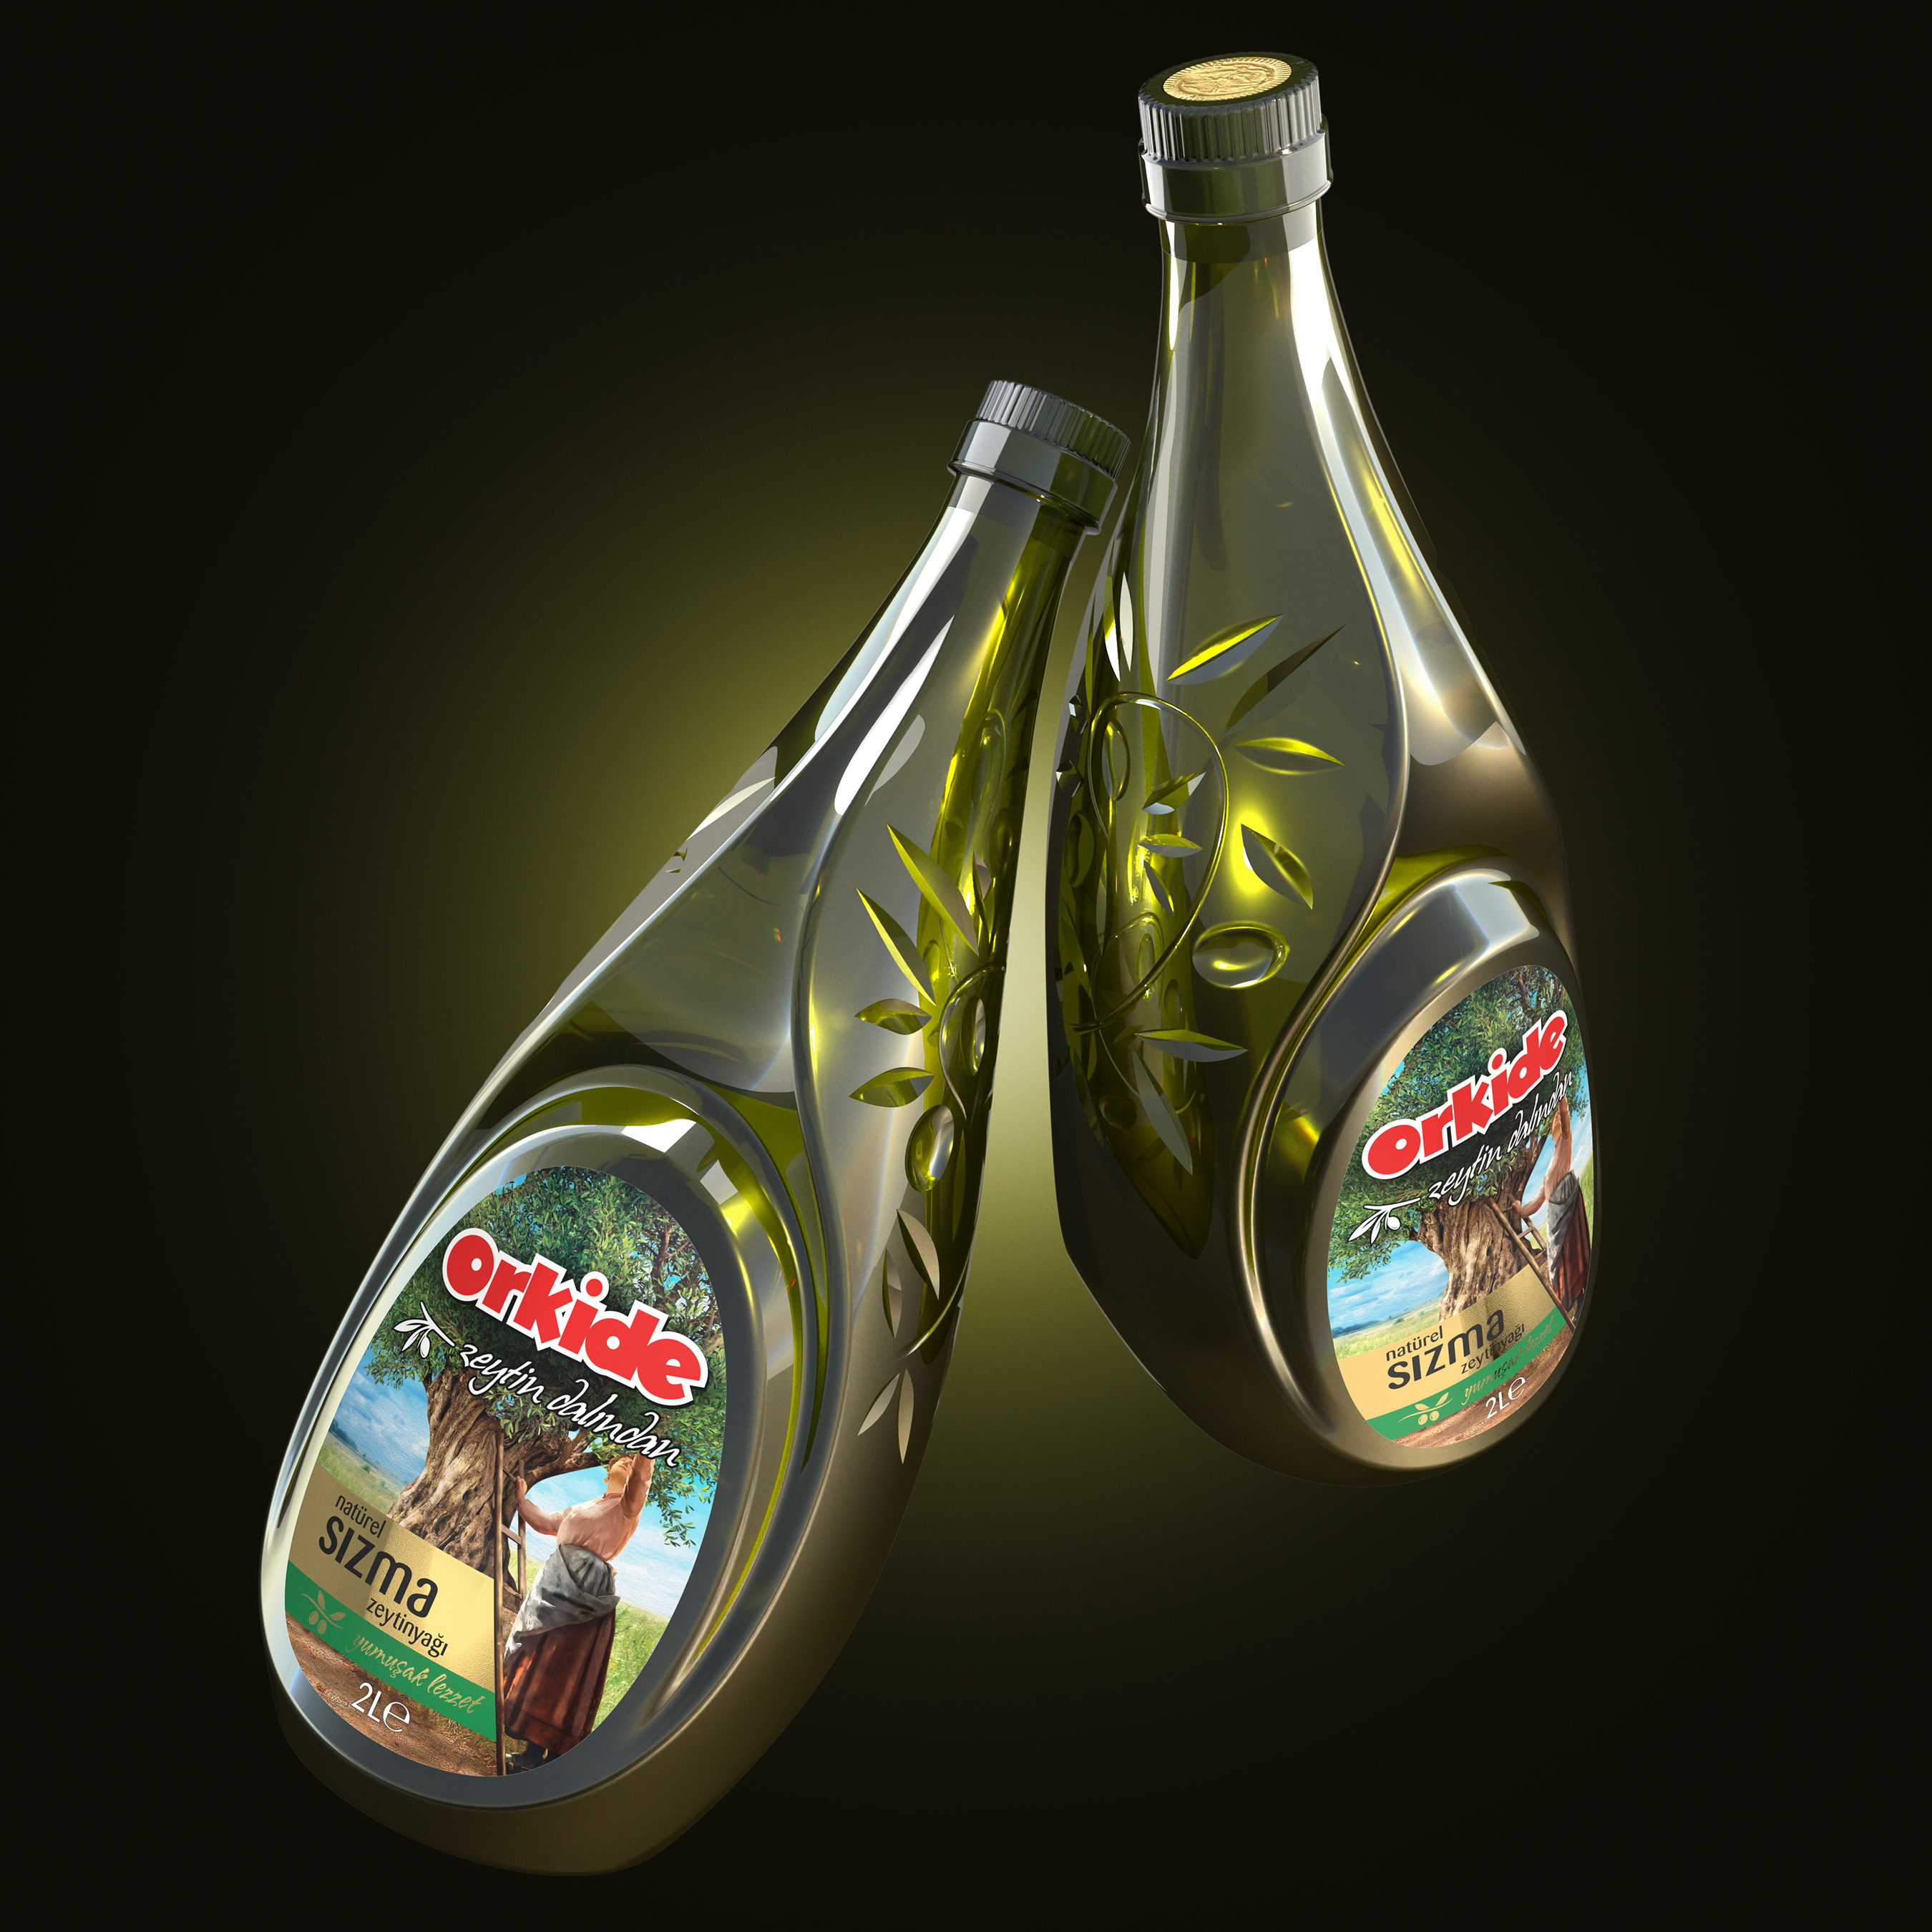 Orkide Olive Oil Packaging Industrial Design PET Bottle and Graphic Design Label